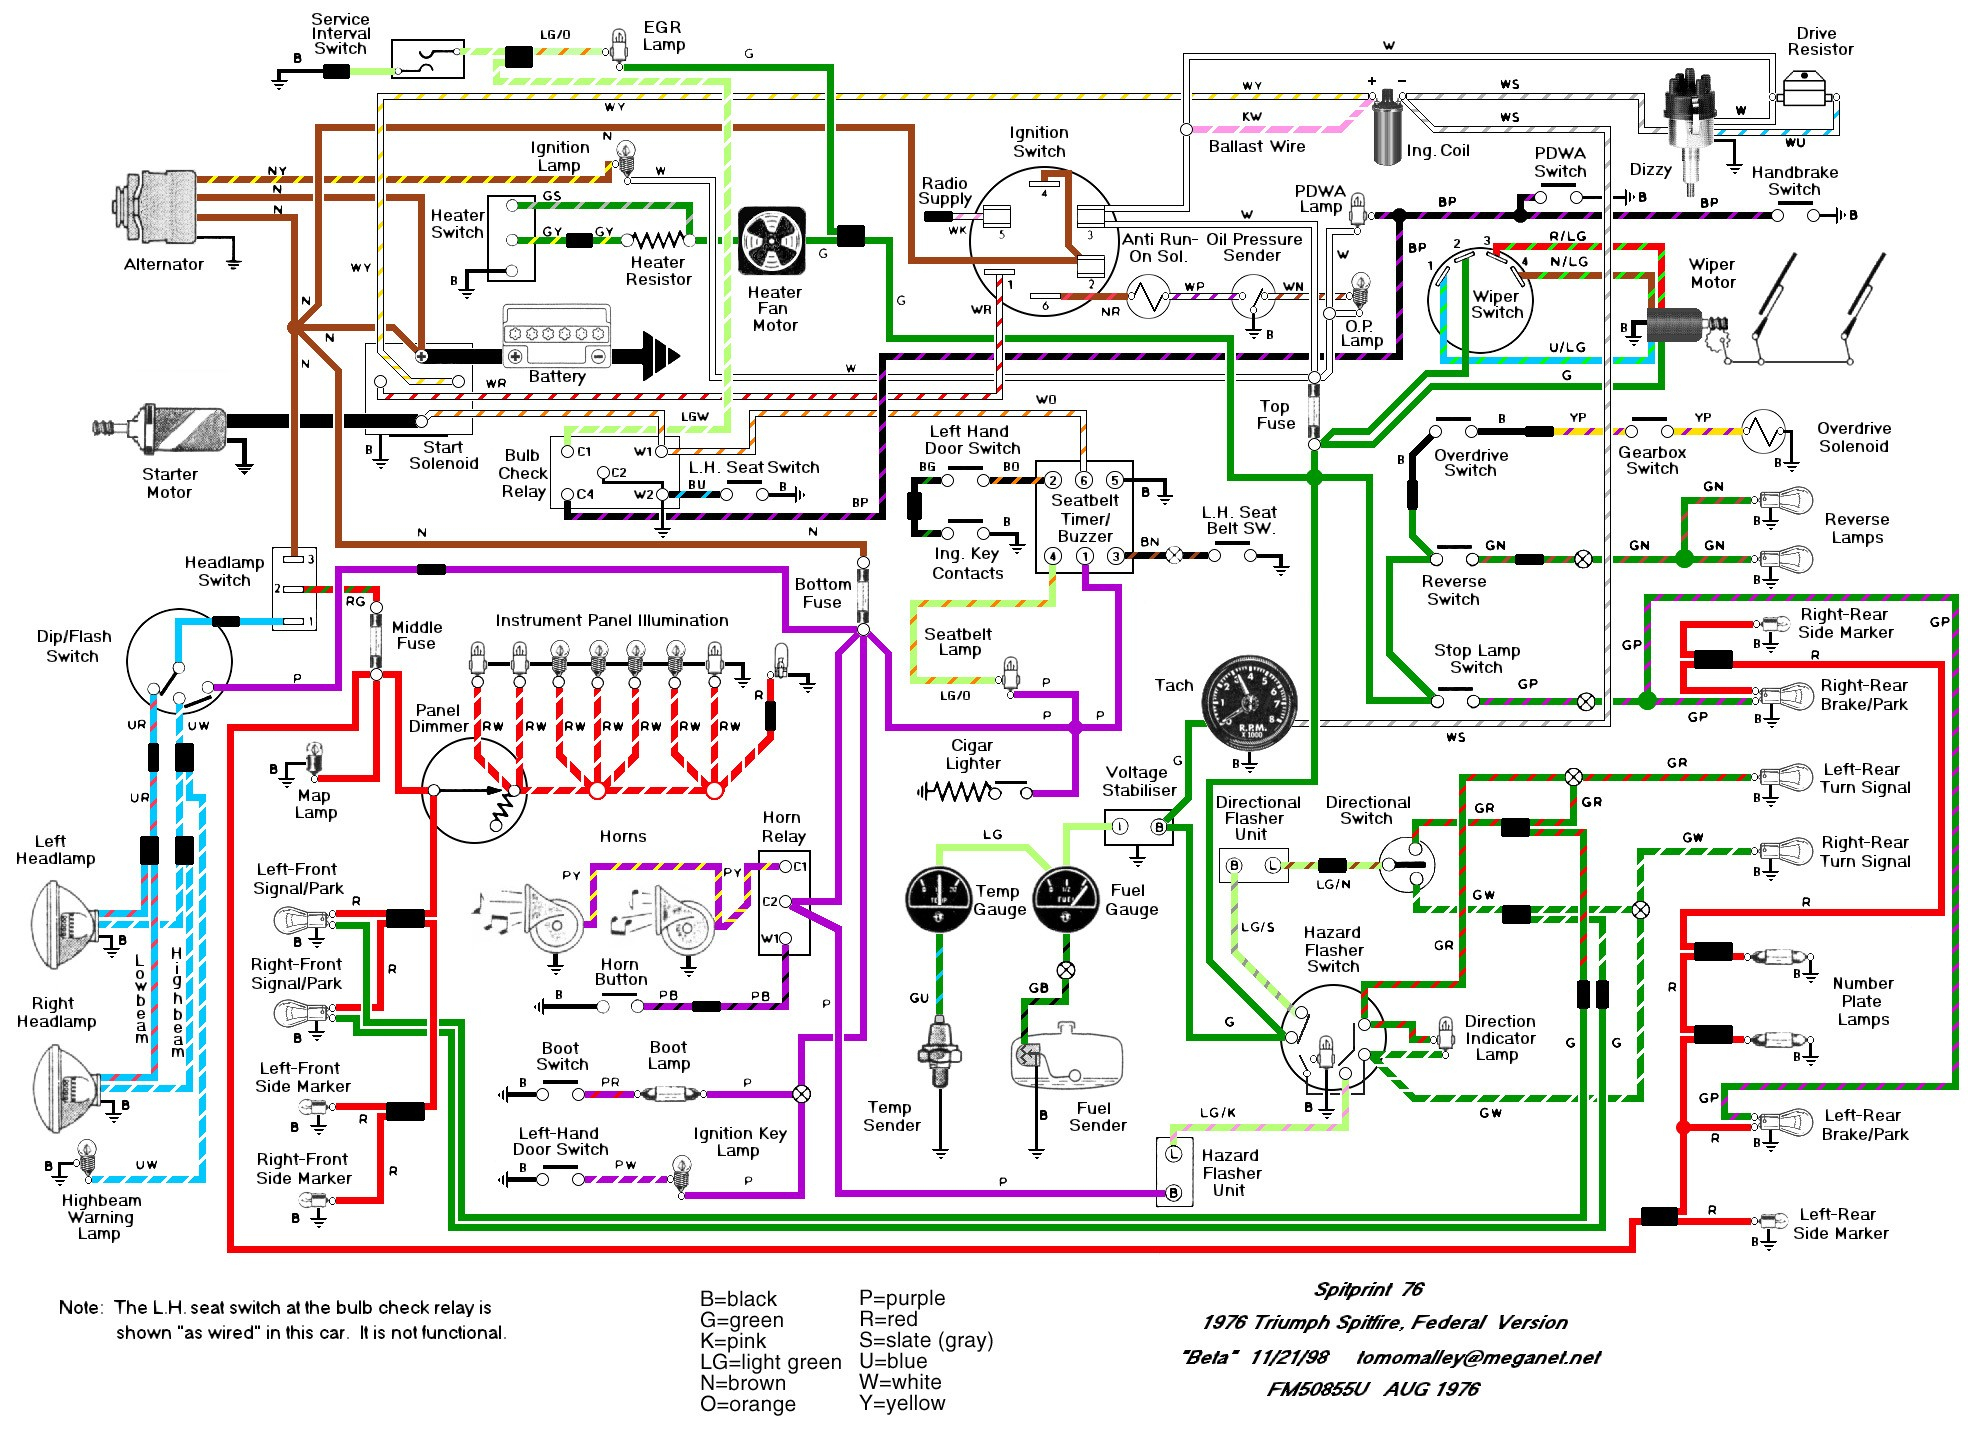 Vehicle Wiring Diagram App - Data Wiring Diagram Schematic - Wiring Diagram Software